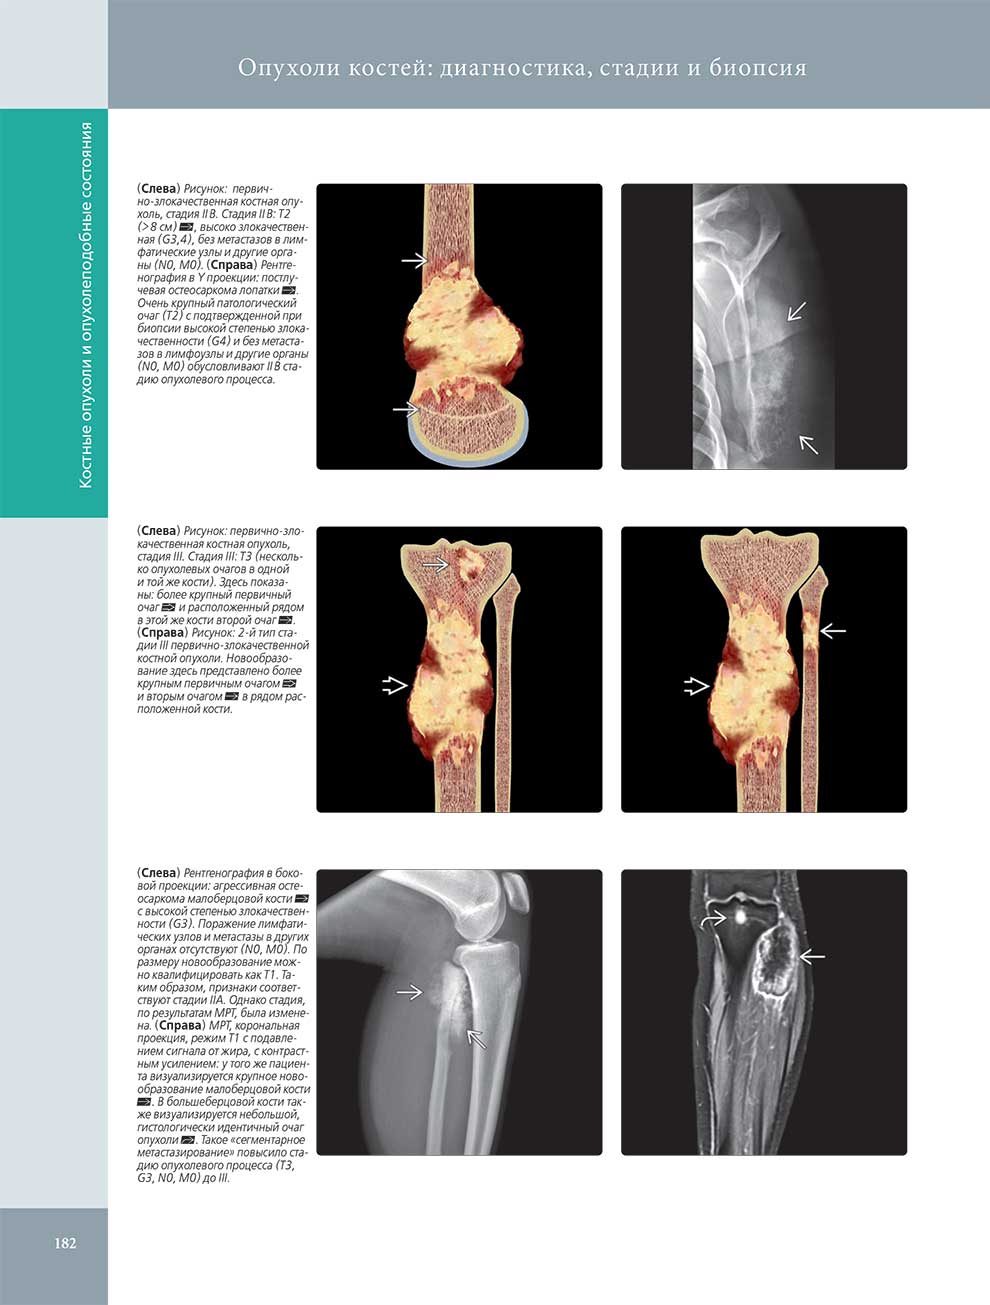 Опухоли костей: диагностика, стадии и биопси